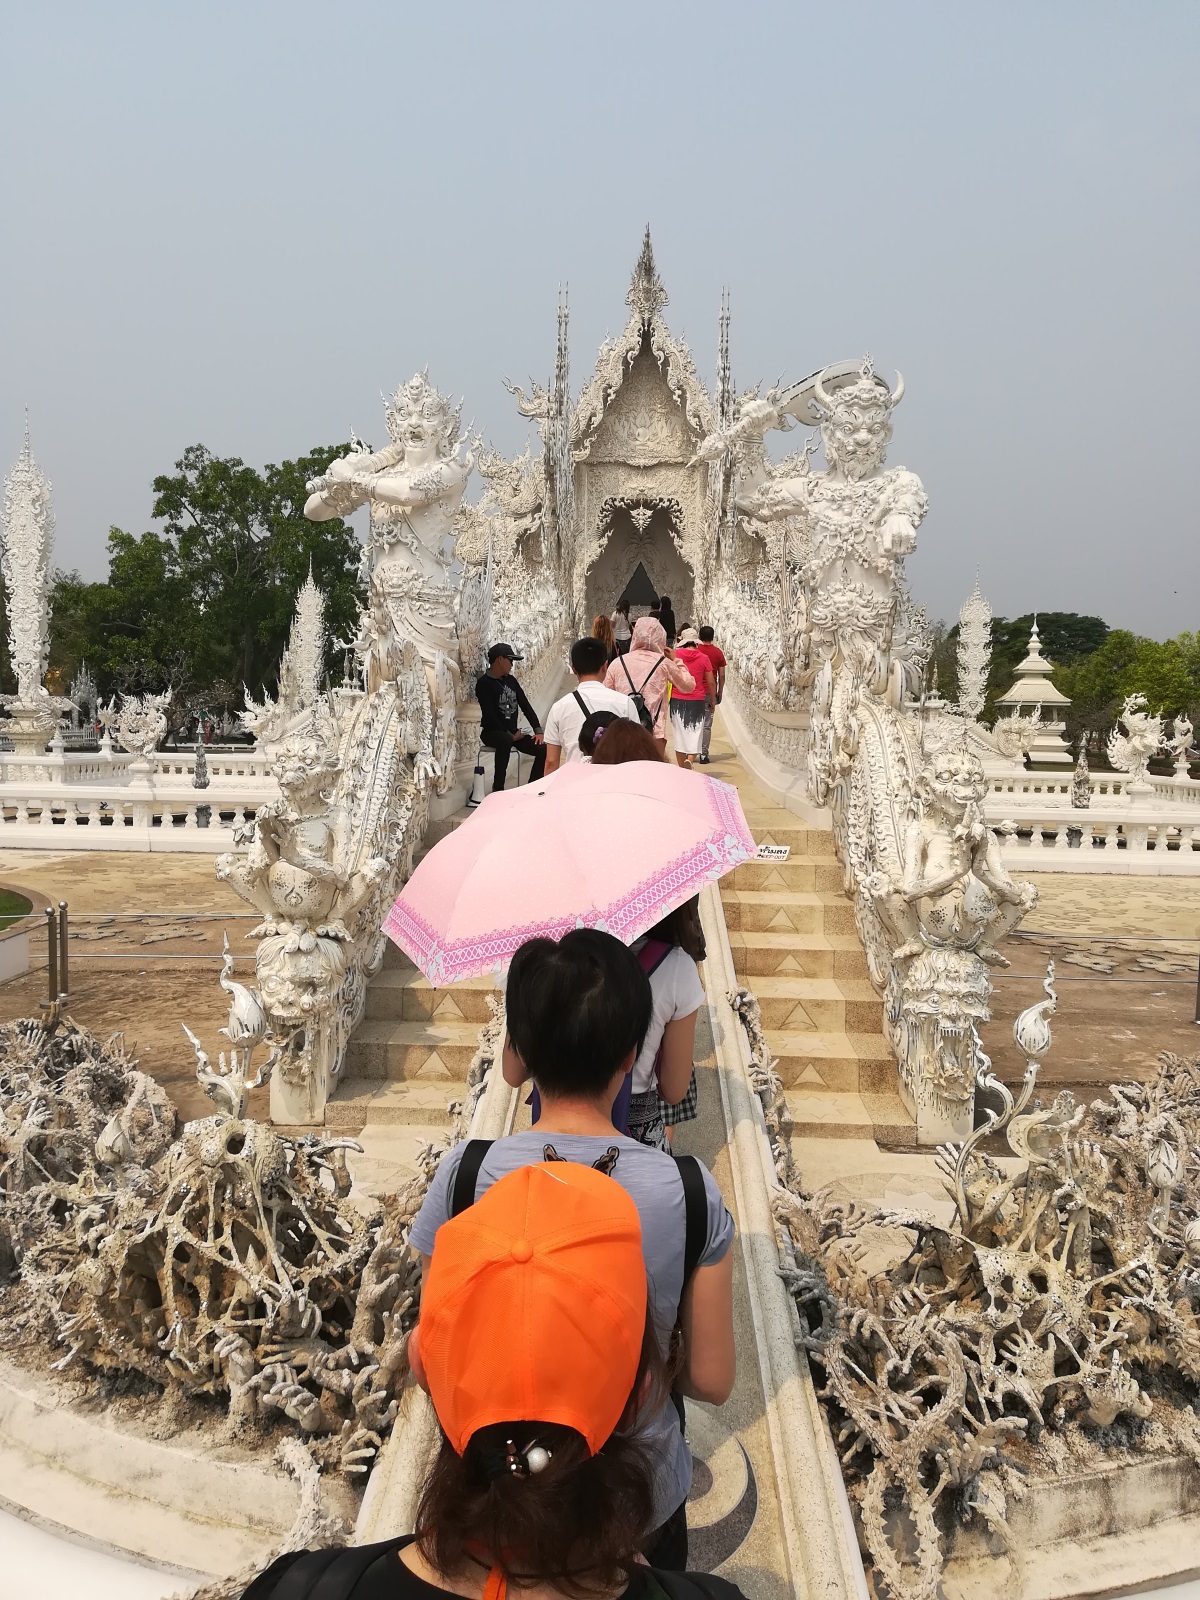 Белият храм или Wat Rong Khun е истинско бижу в провинция Чианг Рай. Храмът е едно от най-посещаваните места в Тайланд и впечатлява с архитектурата си. Сградата е построена по поръчка на известен художник, който искал да остави нещо от себе си на родното си място. Целта му била да построи най-красивия храм в света. Започнал да работи по проекта през 1997 г., заедно със съпругата си. Всяка година нещо ново се добавя по сградата и така тя постоянно се обновява и различава по нещо от предходната година. Около Белия храм могат да се видят всякакви скулптури като чудовища и дракони, а ръцете, които се протягат от двете страни на входа, символизират ада. Според легендата ако ръцете те хванат, докато минаваш по пътеката, значи си грешник. Пътуването на автора до Чианг Рай е спонсорирано от Qatar Airways.